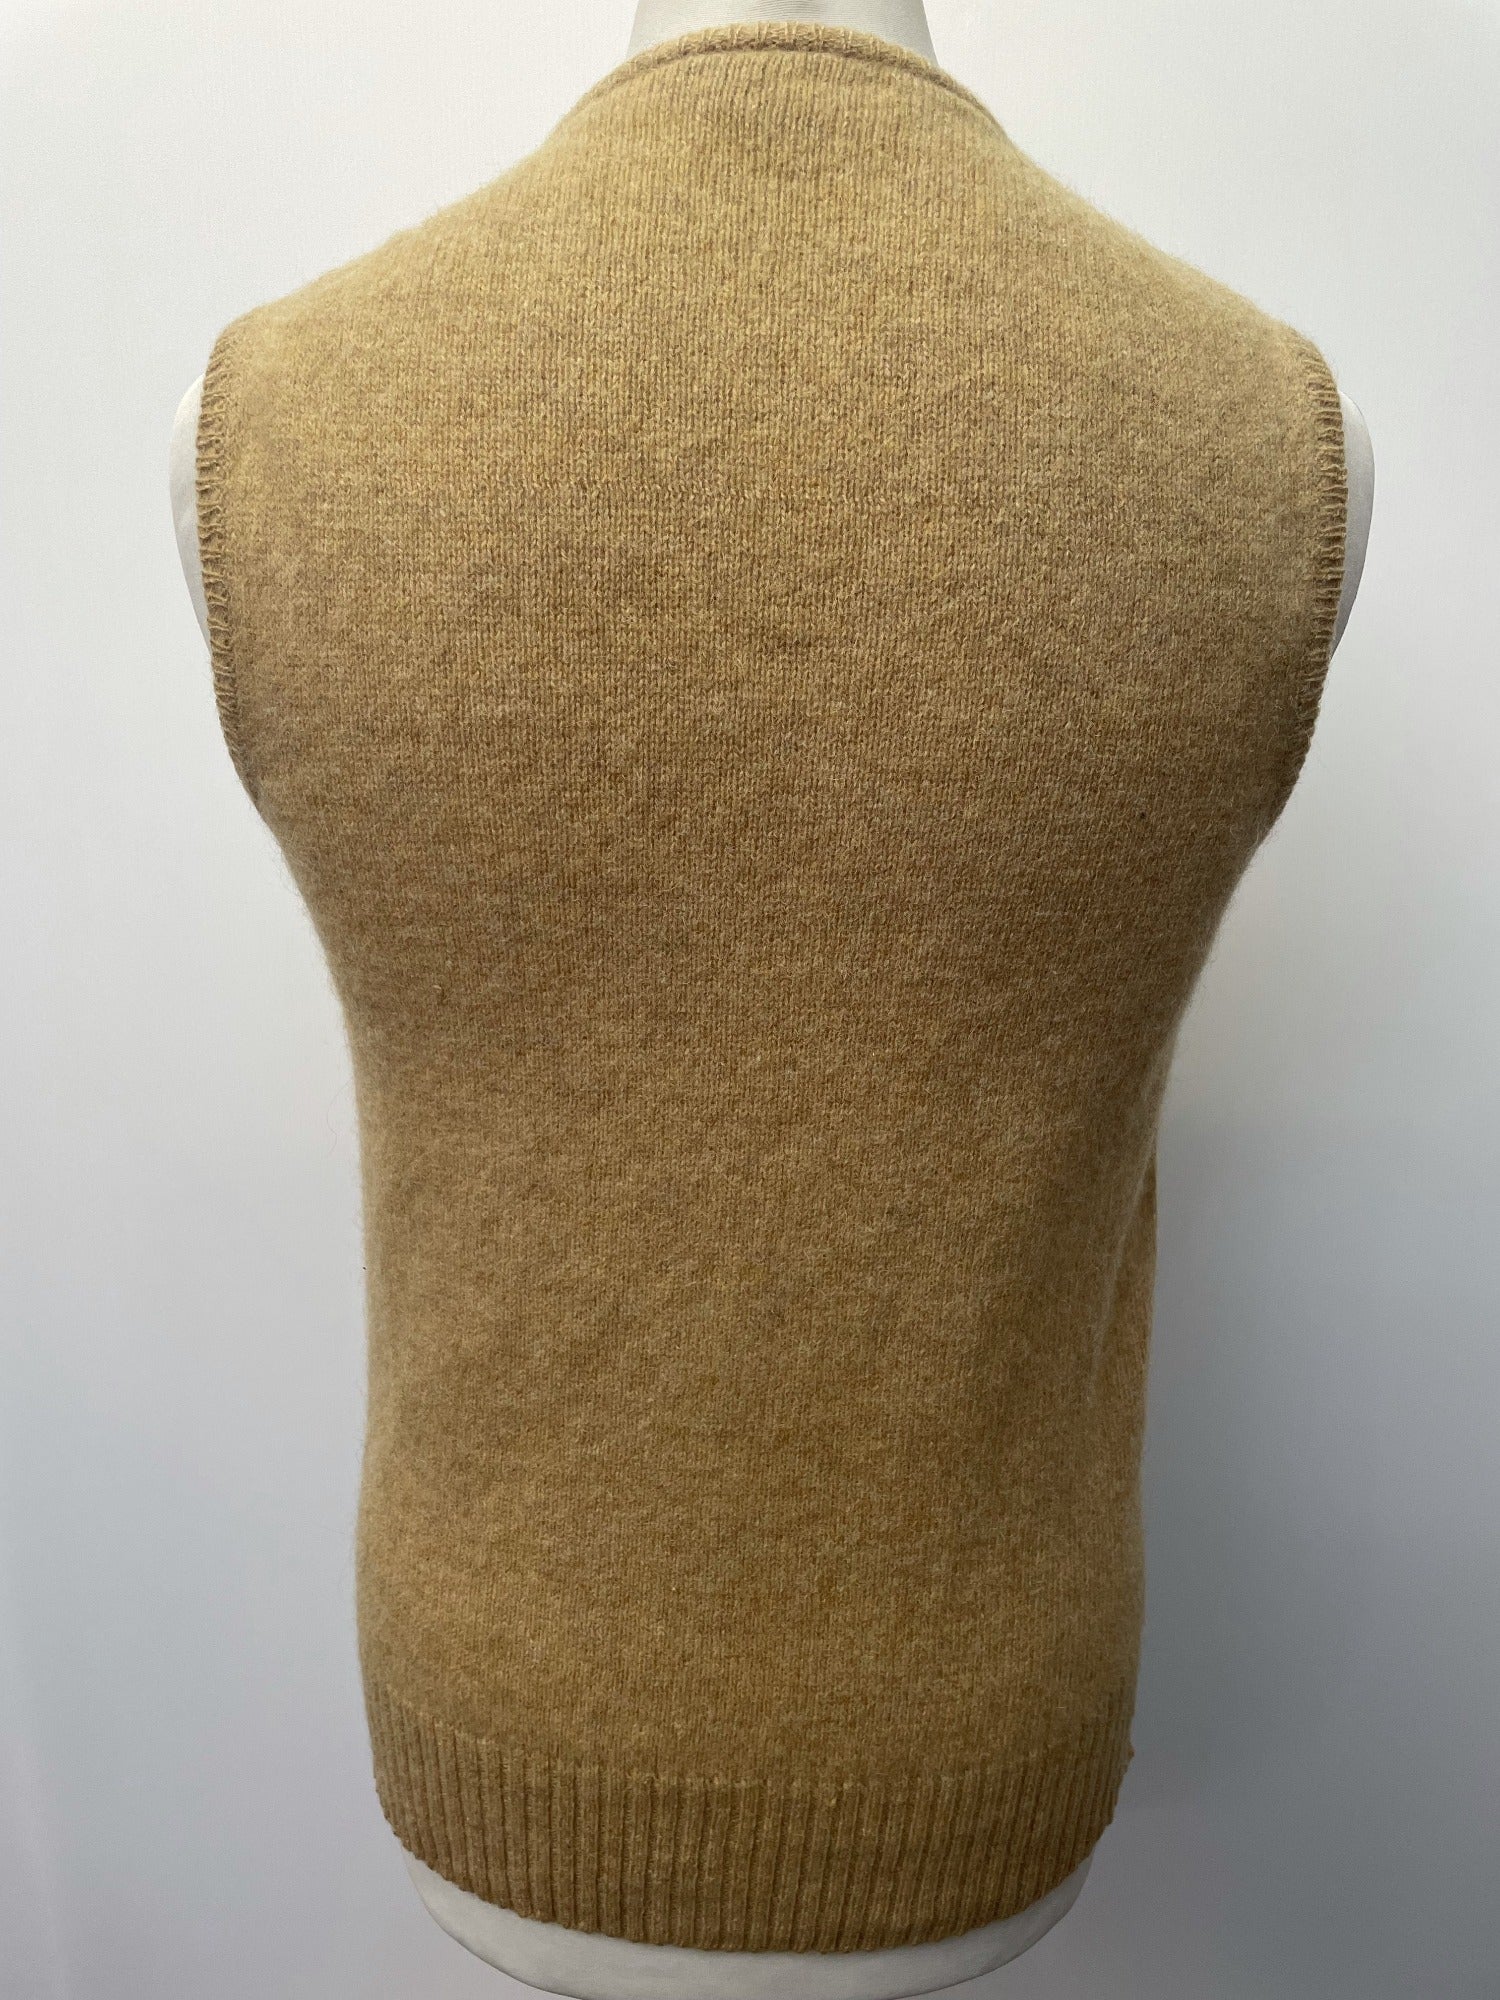 Wool Blend  wool  vintage  vest  v neck  Urban Village Vintage  urban village  tootal  sleevless  S  ribbed design  Ribbed  nylon  mens  elasticated  beige  60s  1960s